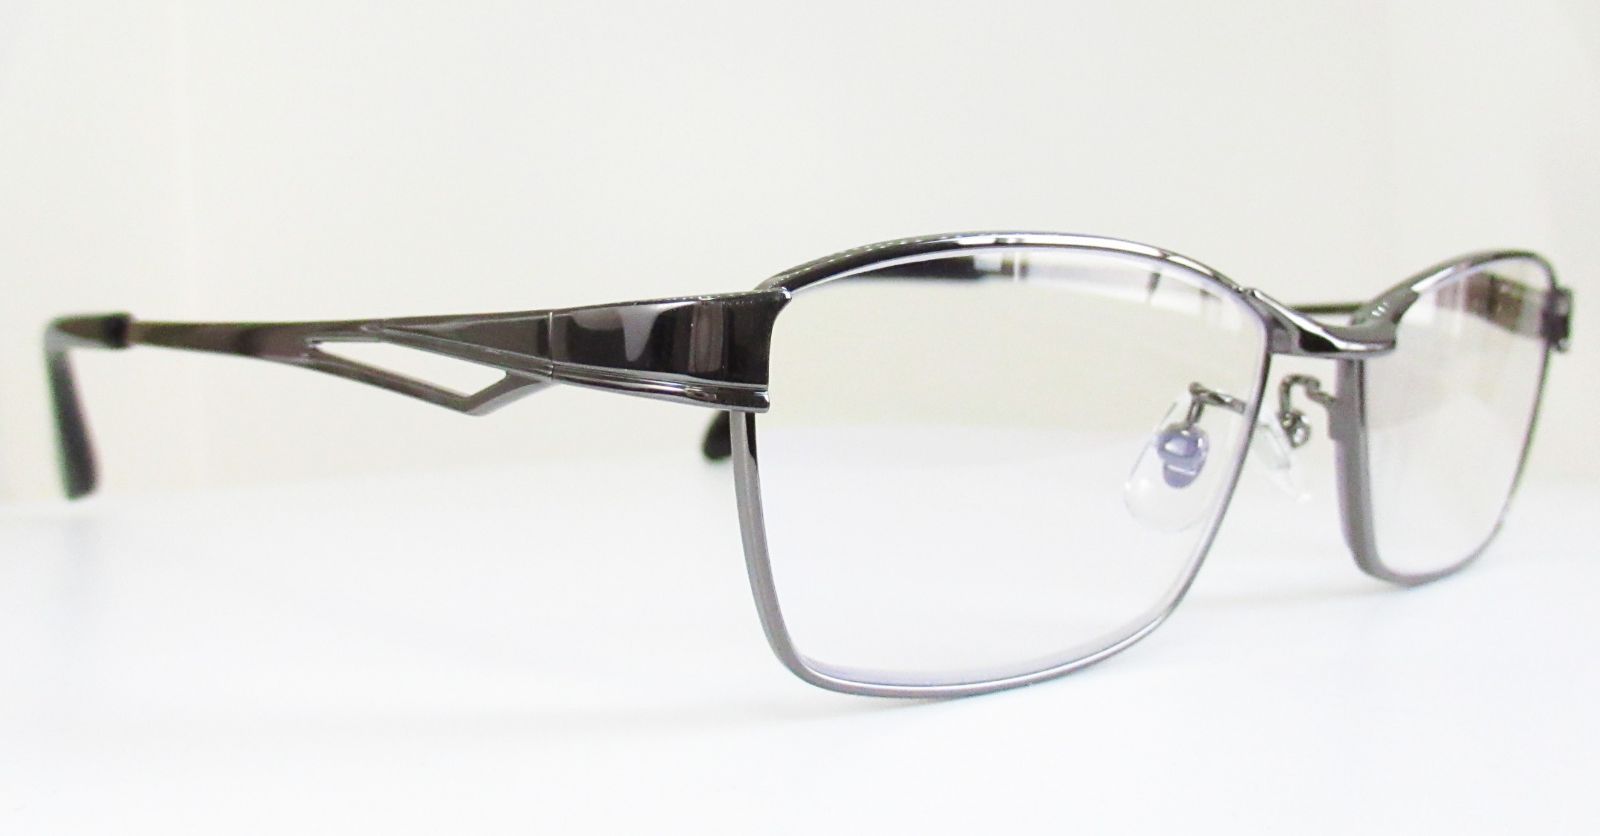 Mr.JUNKO ミスタージュンコ　紳士用 老眼鏡　◆リーディンググラス　MJ-3001R　◆ブルーライト約27%カット　◆+1.00